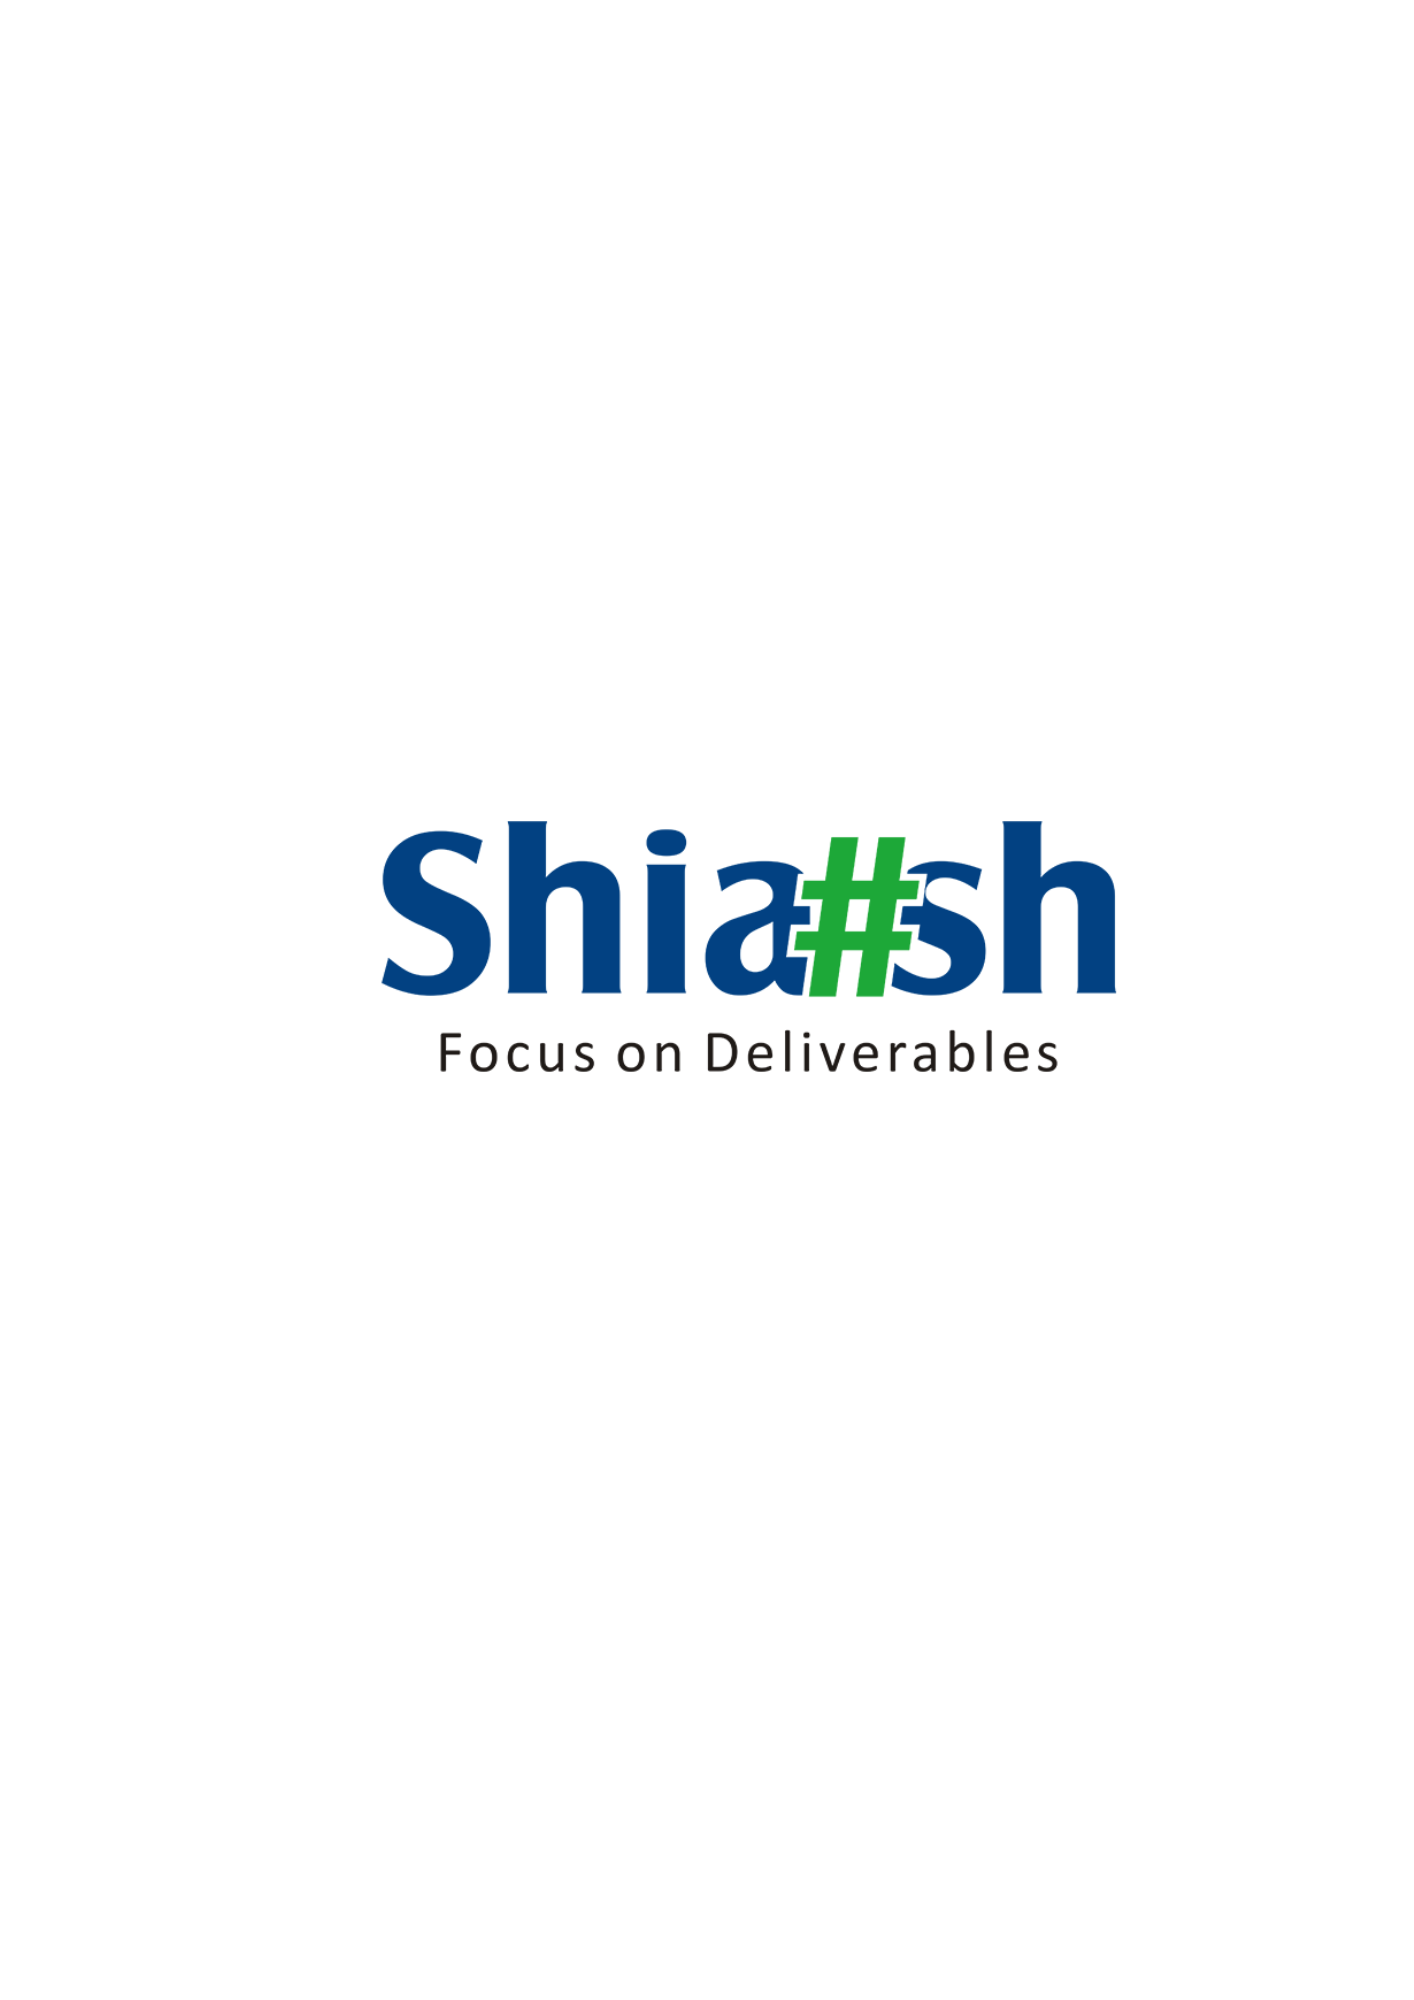 Shiash Info Solutions